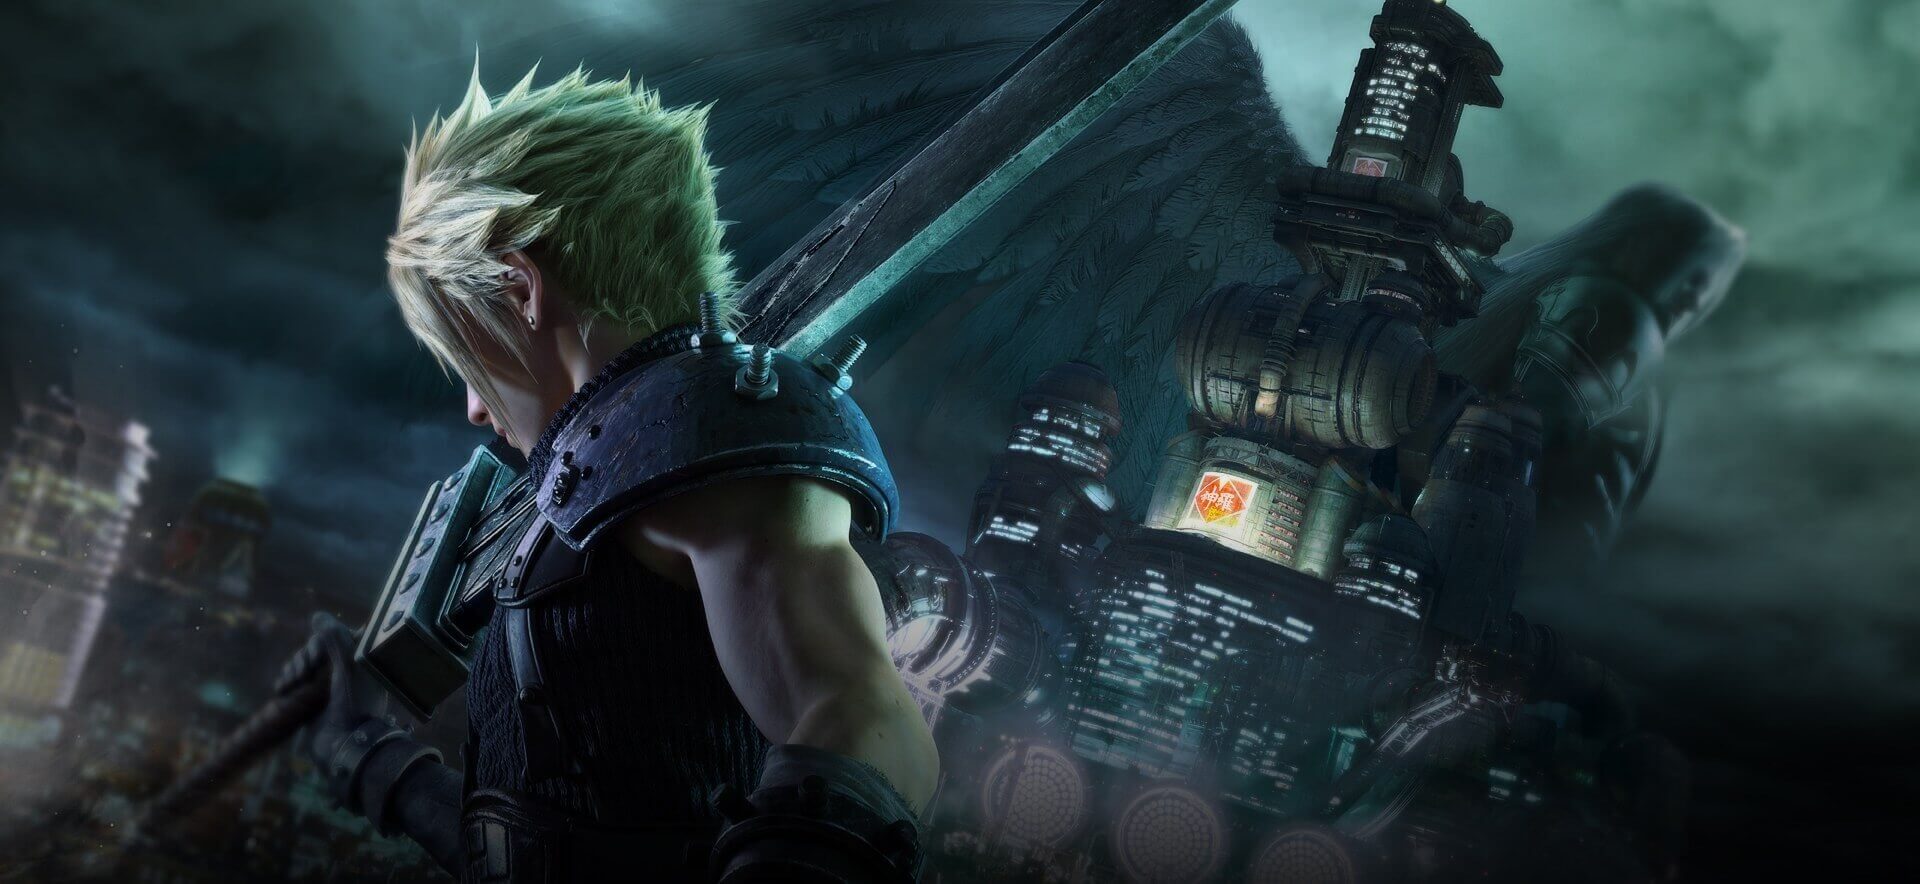 Final Fantasy VII Remake delayed until April for 'final polish'